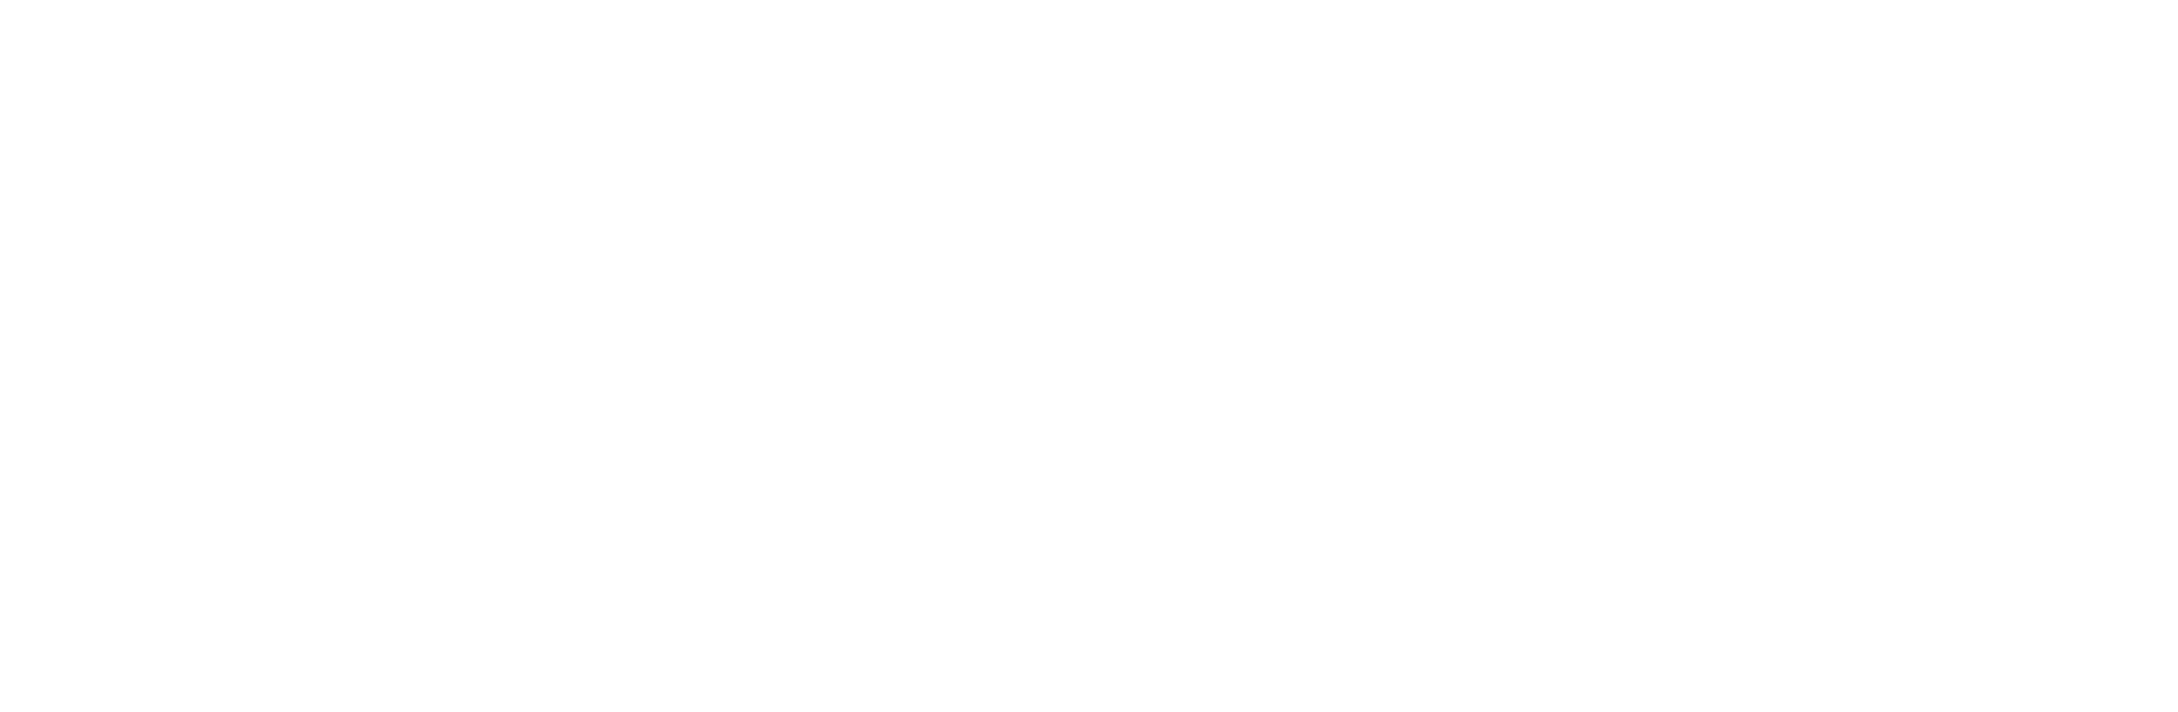 Lust4live heeft de award van Sortlist verdiend als een top rated agency 